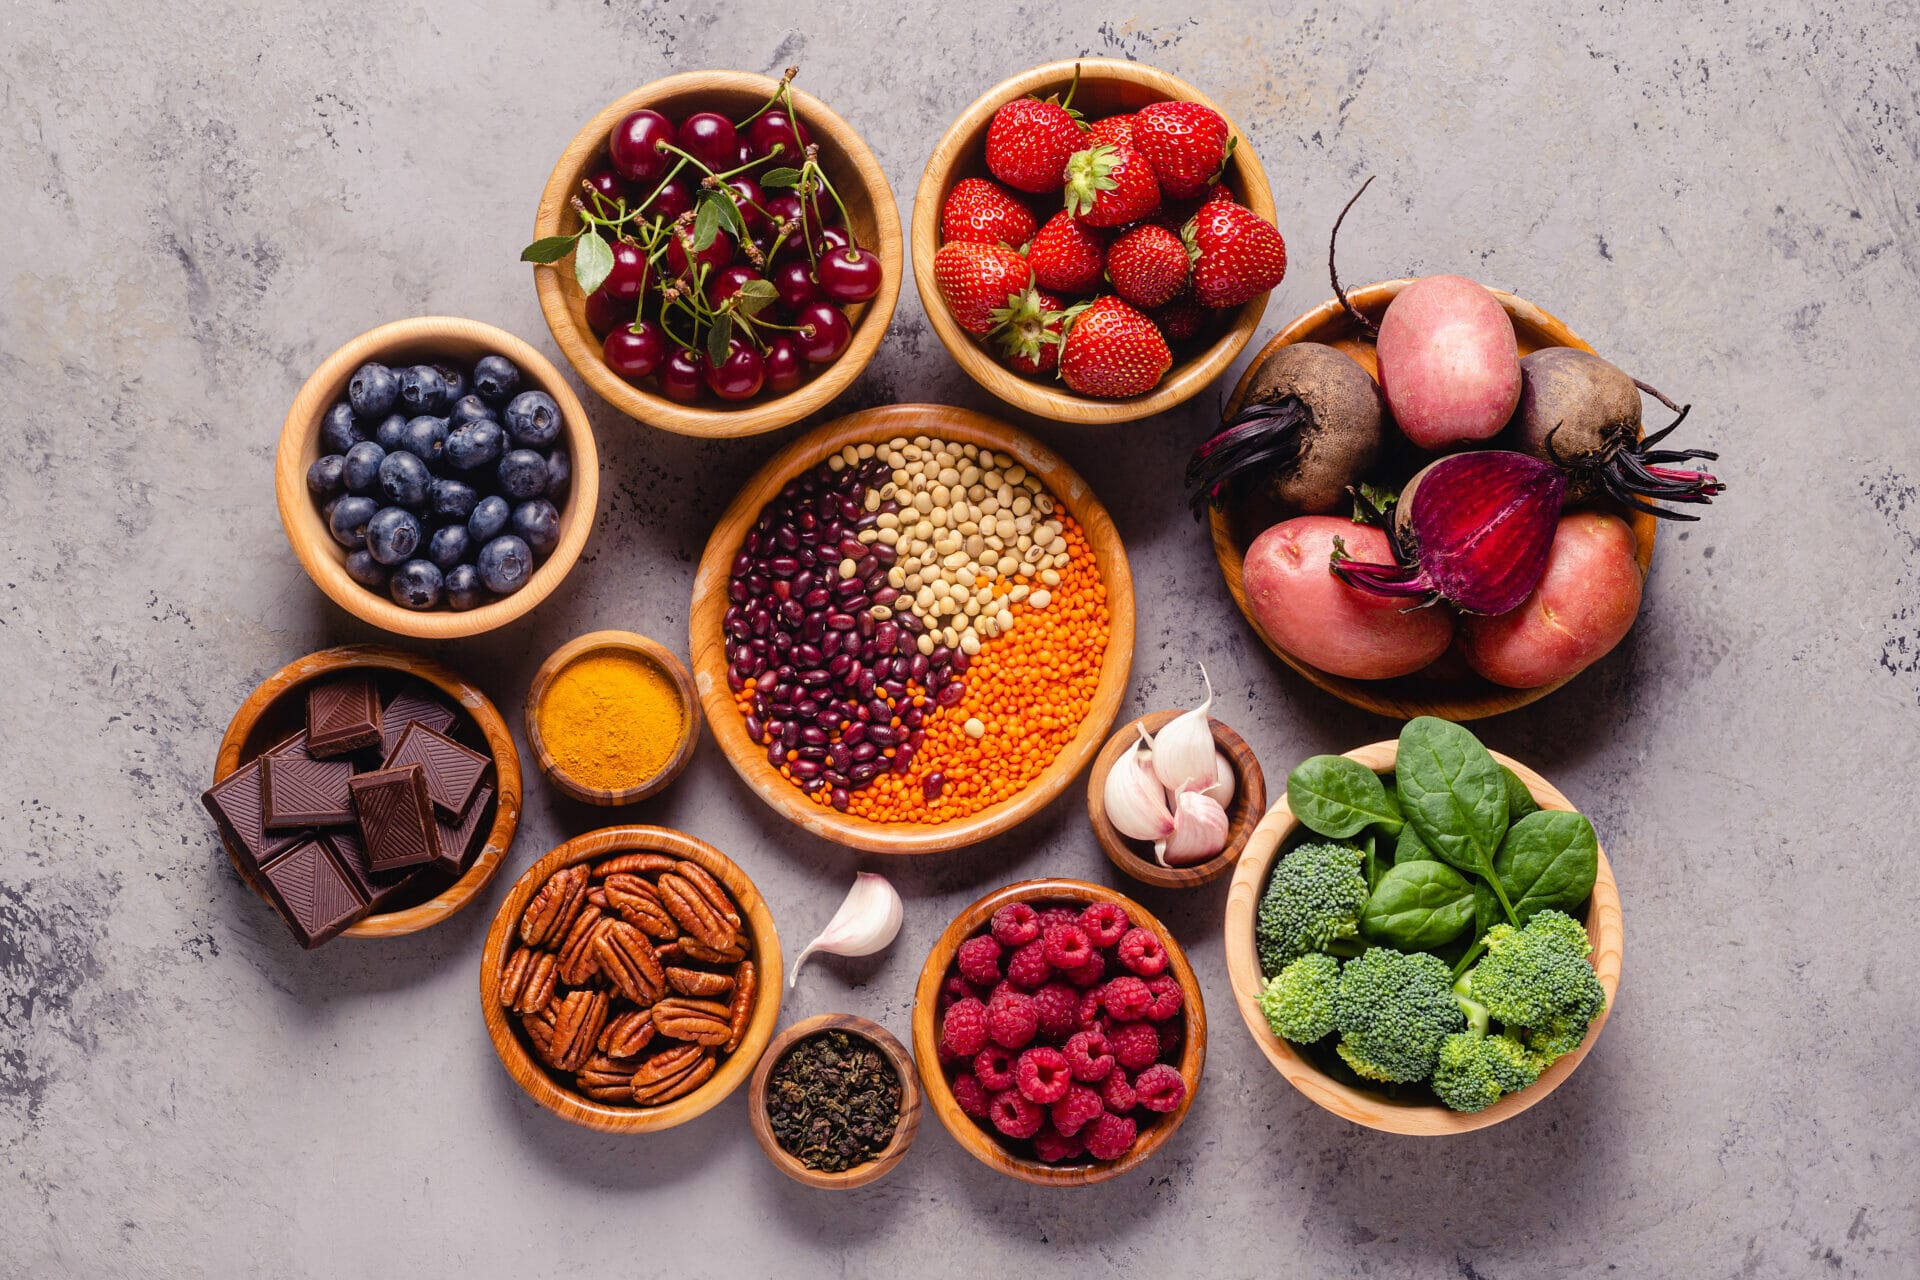 Best ingredients for antioxidants in 2022, let's explore